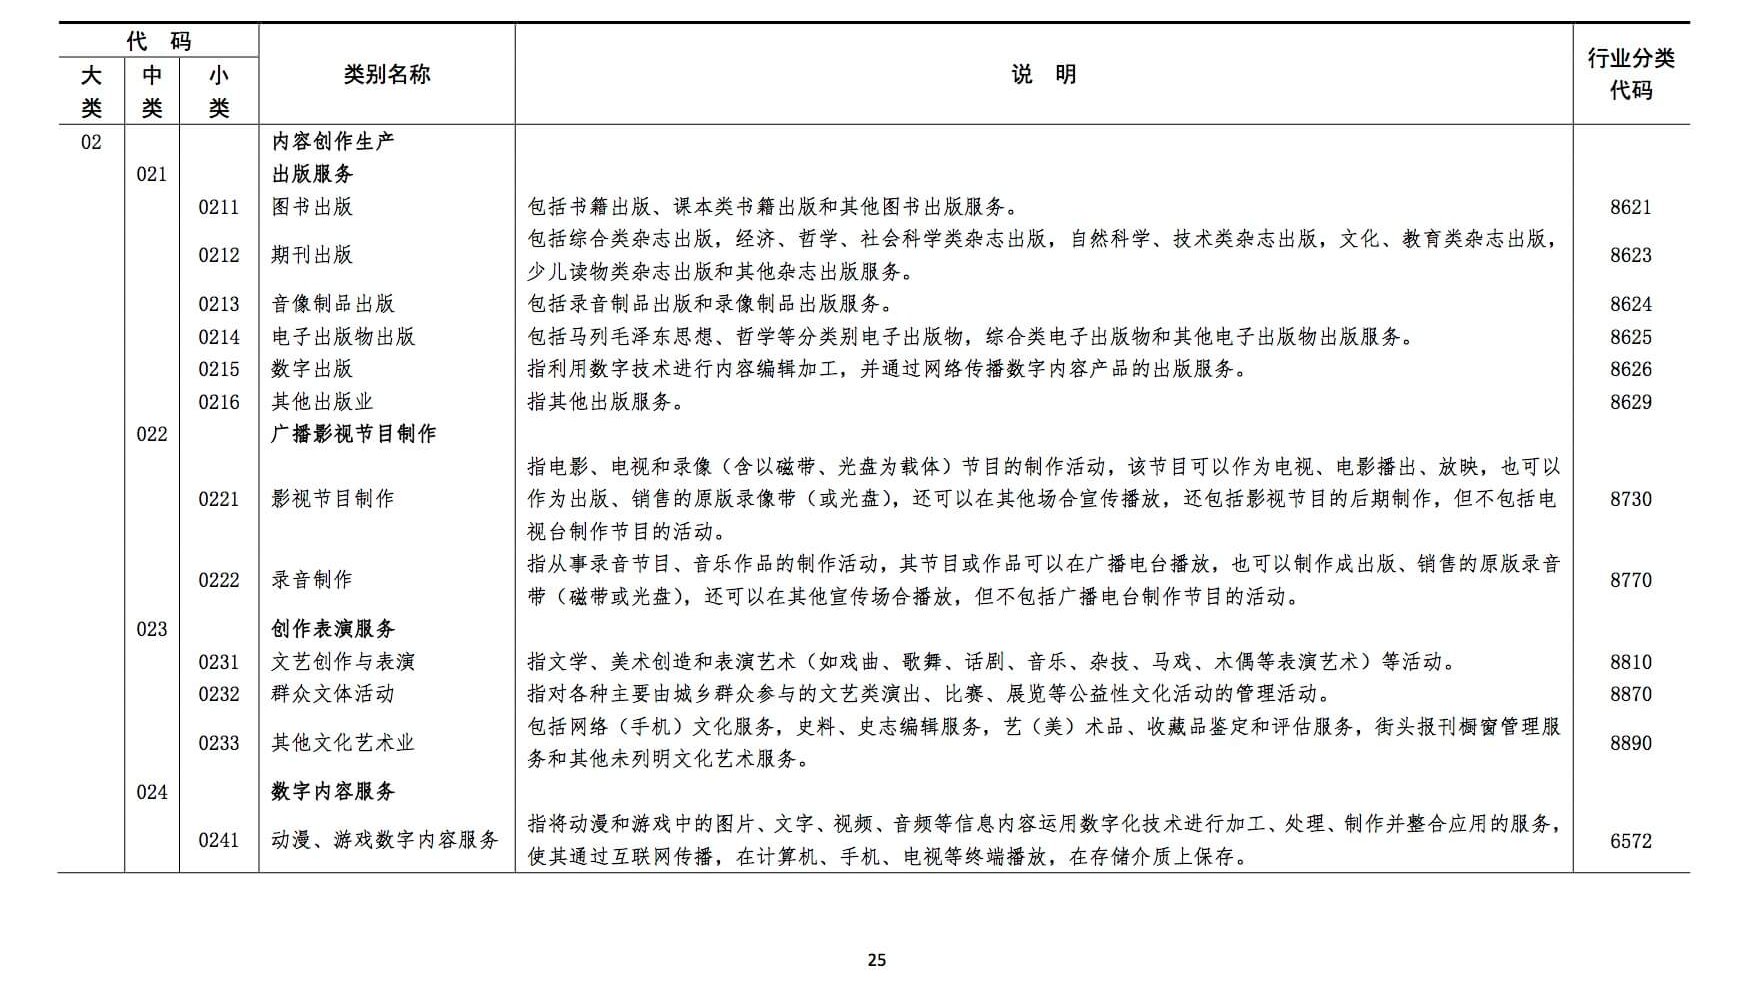 北京朝阳法院发布《文化产业知识产权审判白皮书》附下载链接